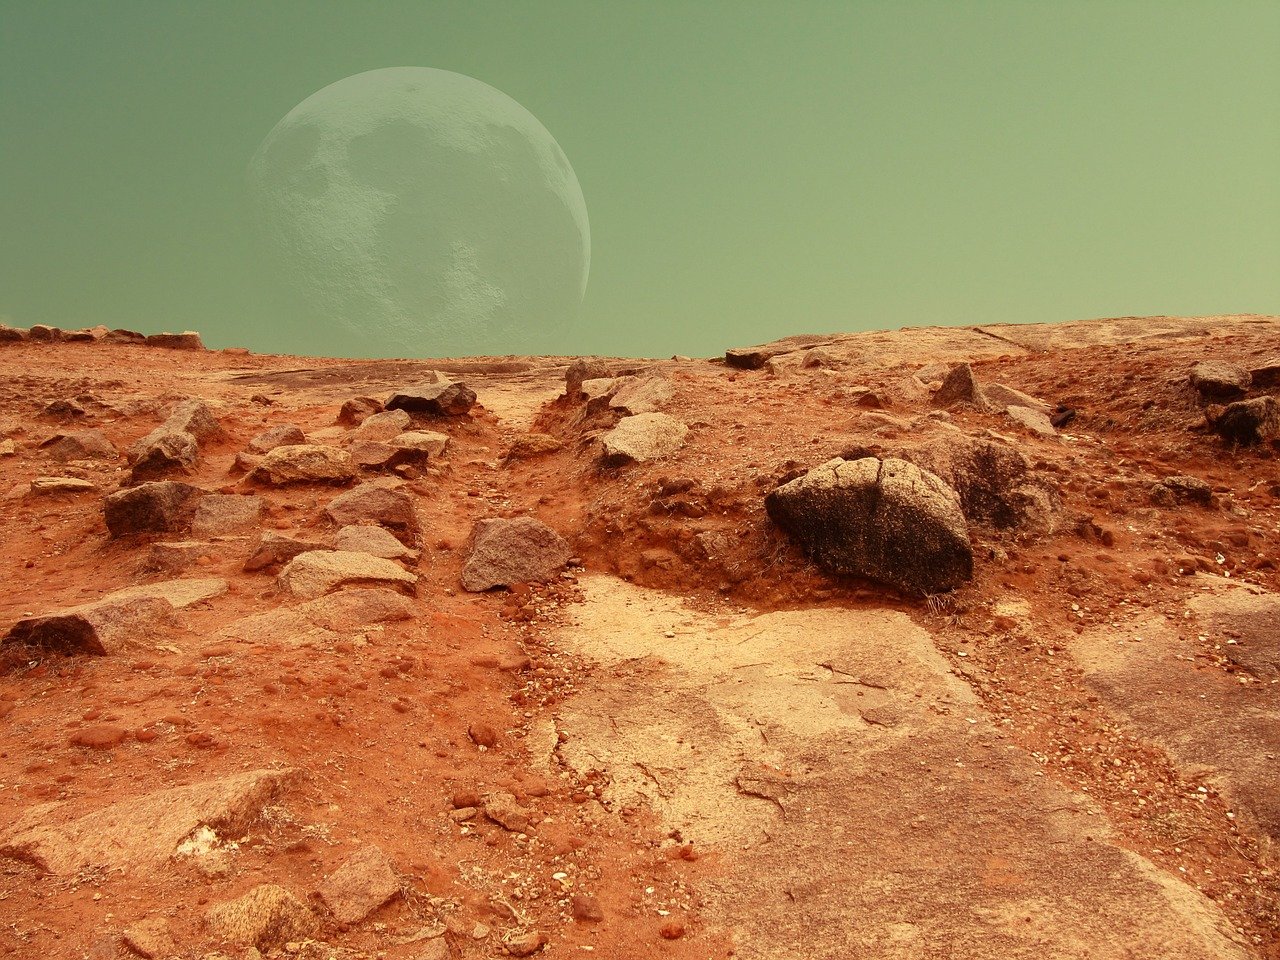 Medidas del Planeta Marte: ¿Cuánto Ancho y Largo Tiene?